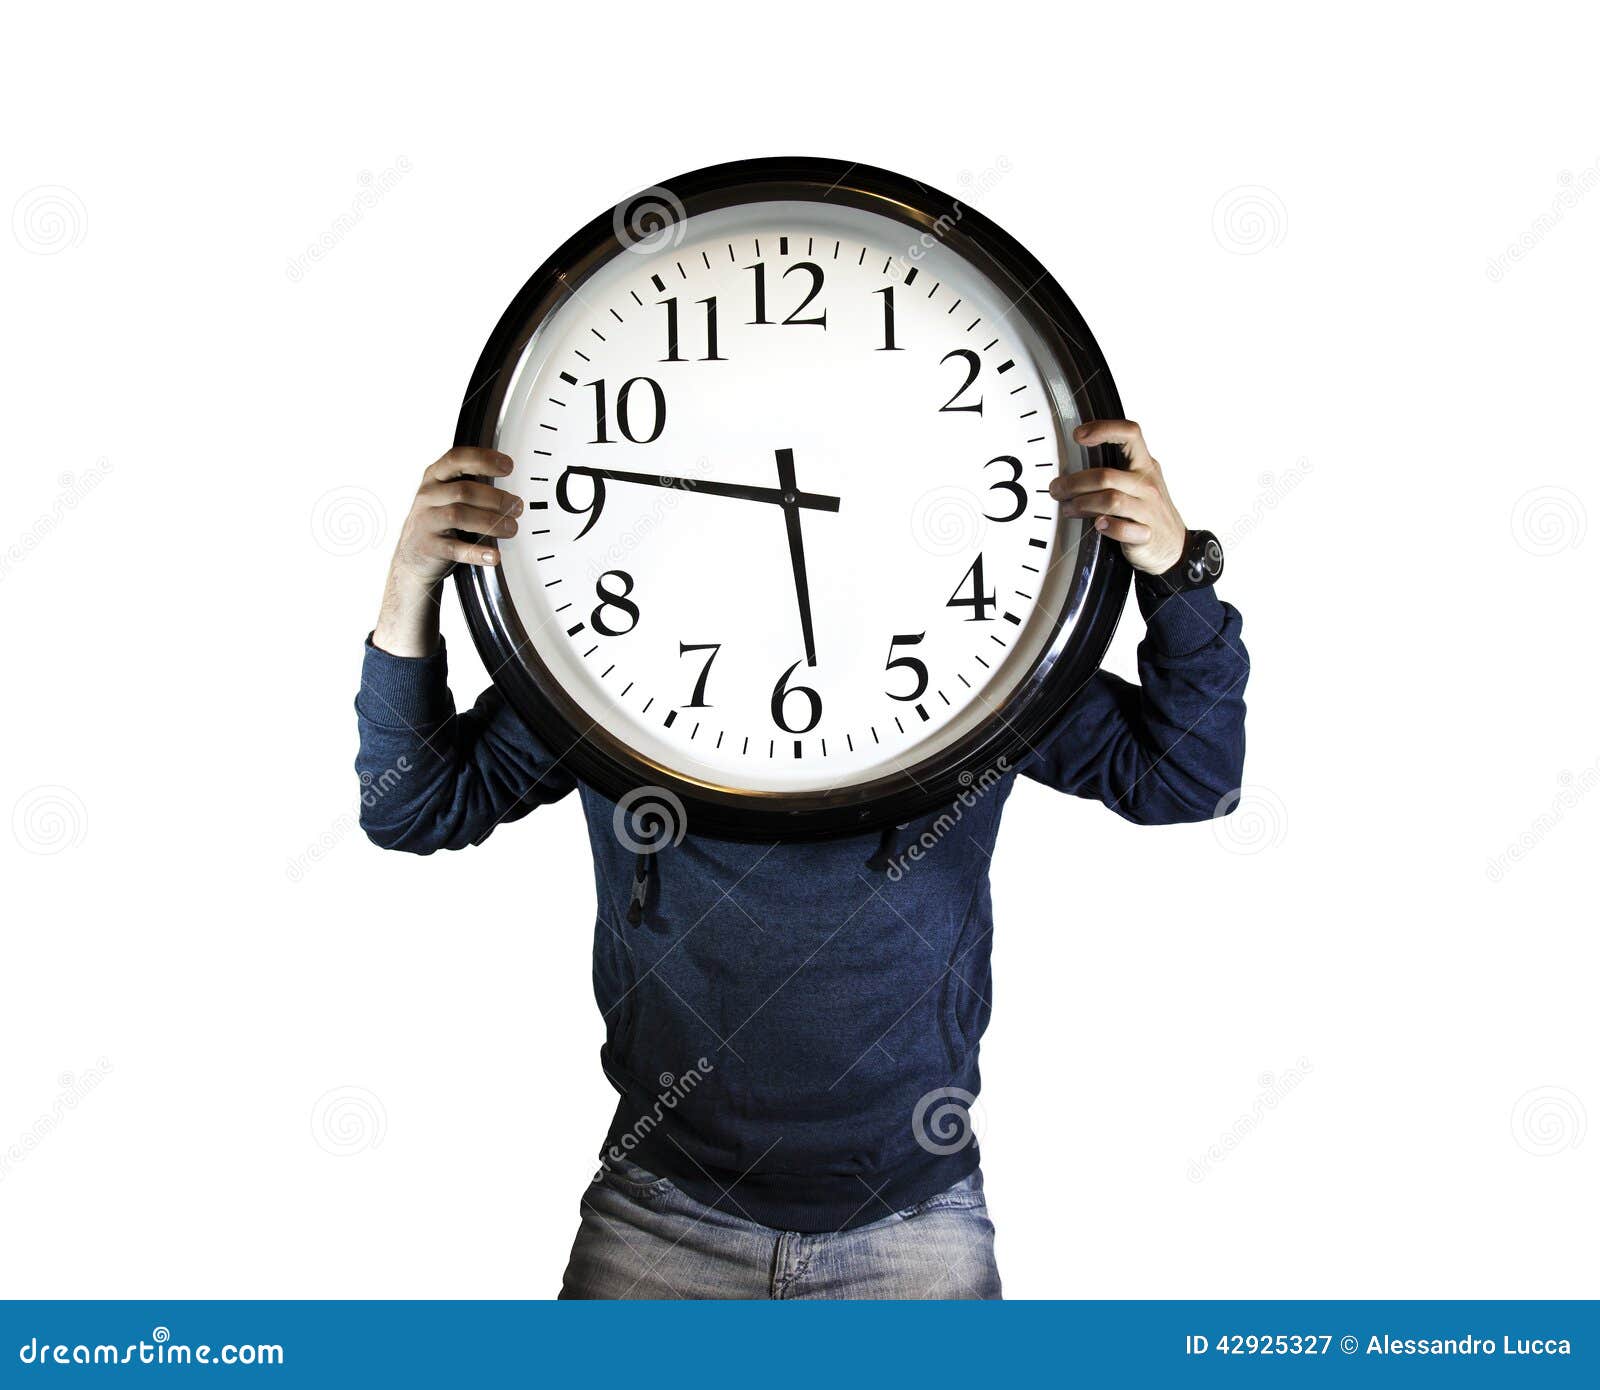 Creative time. Time man. Человечек держит часы. Человек и время. Creative time man.